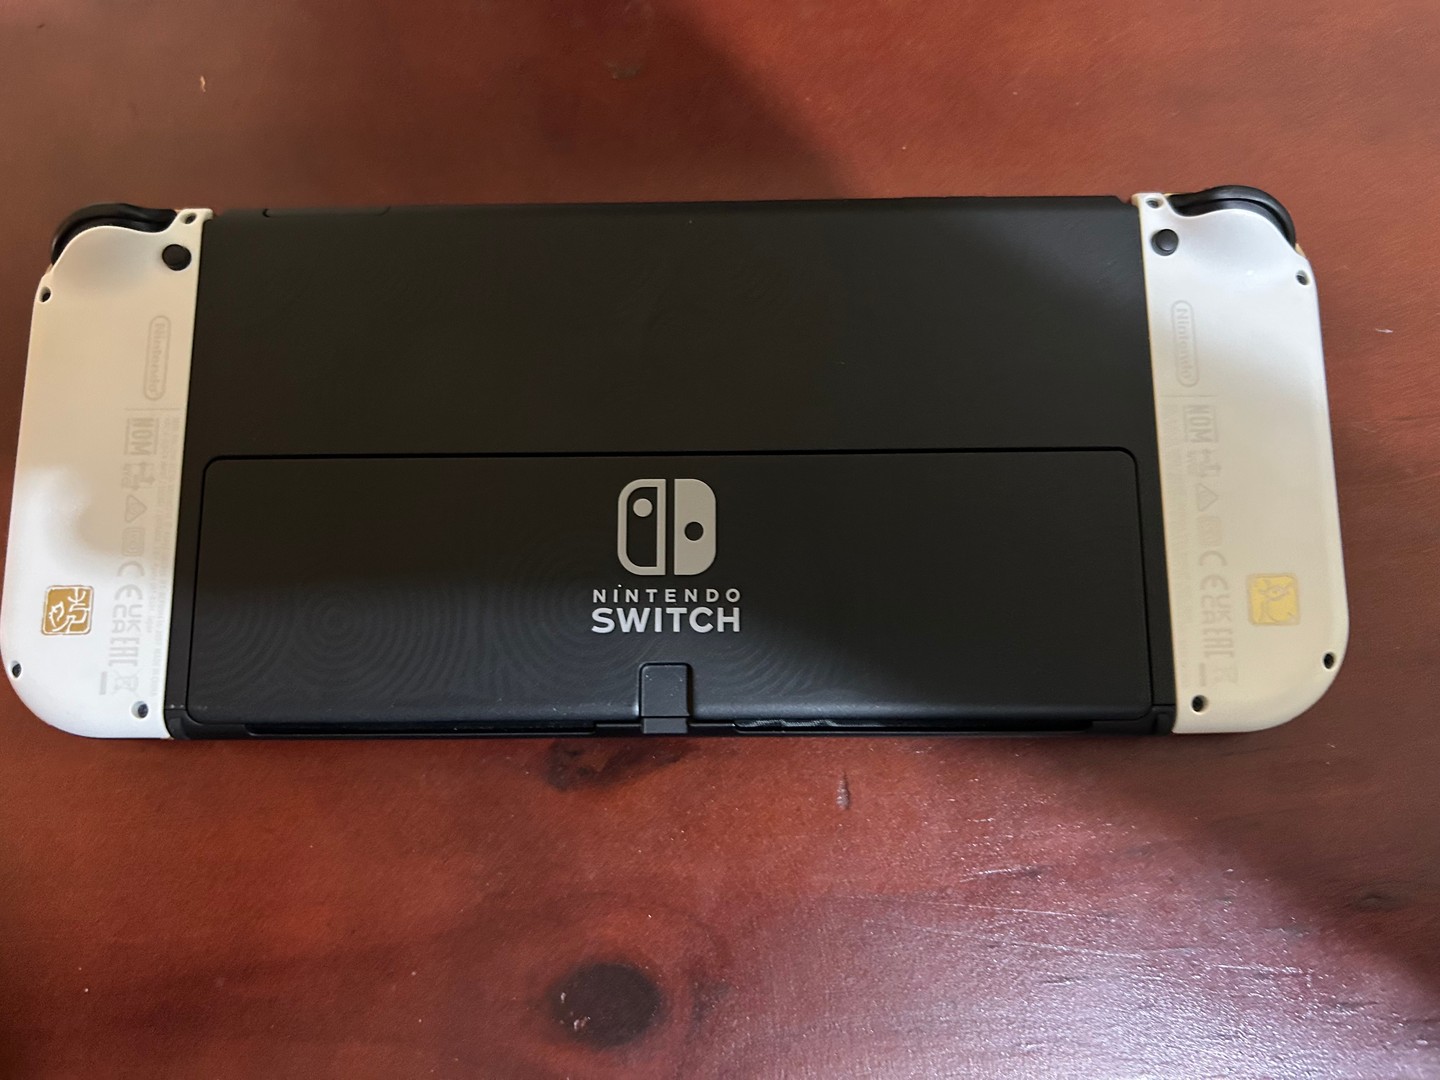 consolas y videojuegos - Nintendo Switch Oled Edicion Zelda como nueva  2